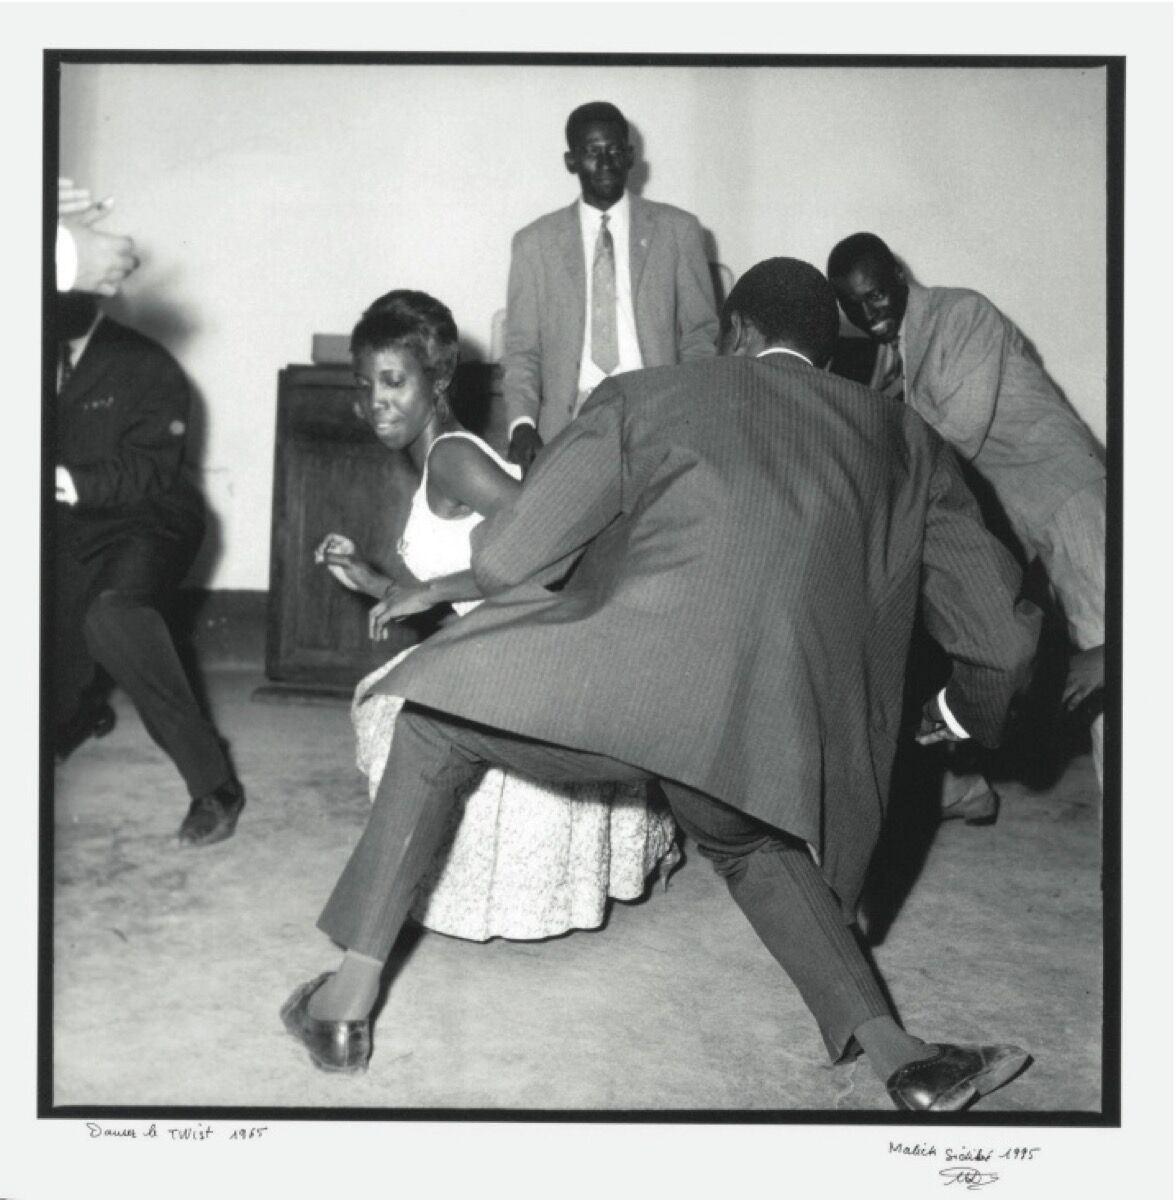 Malick Sidibé, Danser le twist, 1965. Courtesy of the Agnès b. Collection.